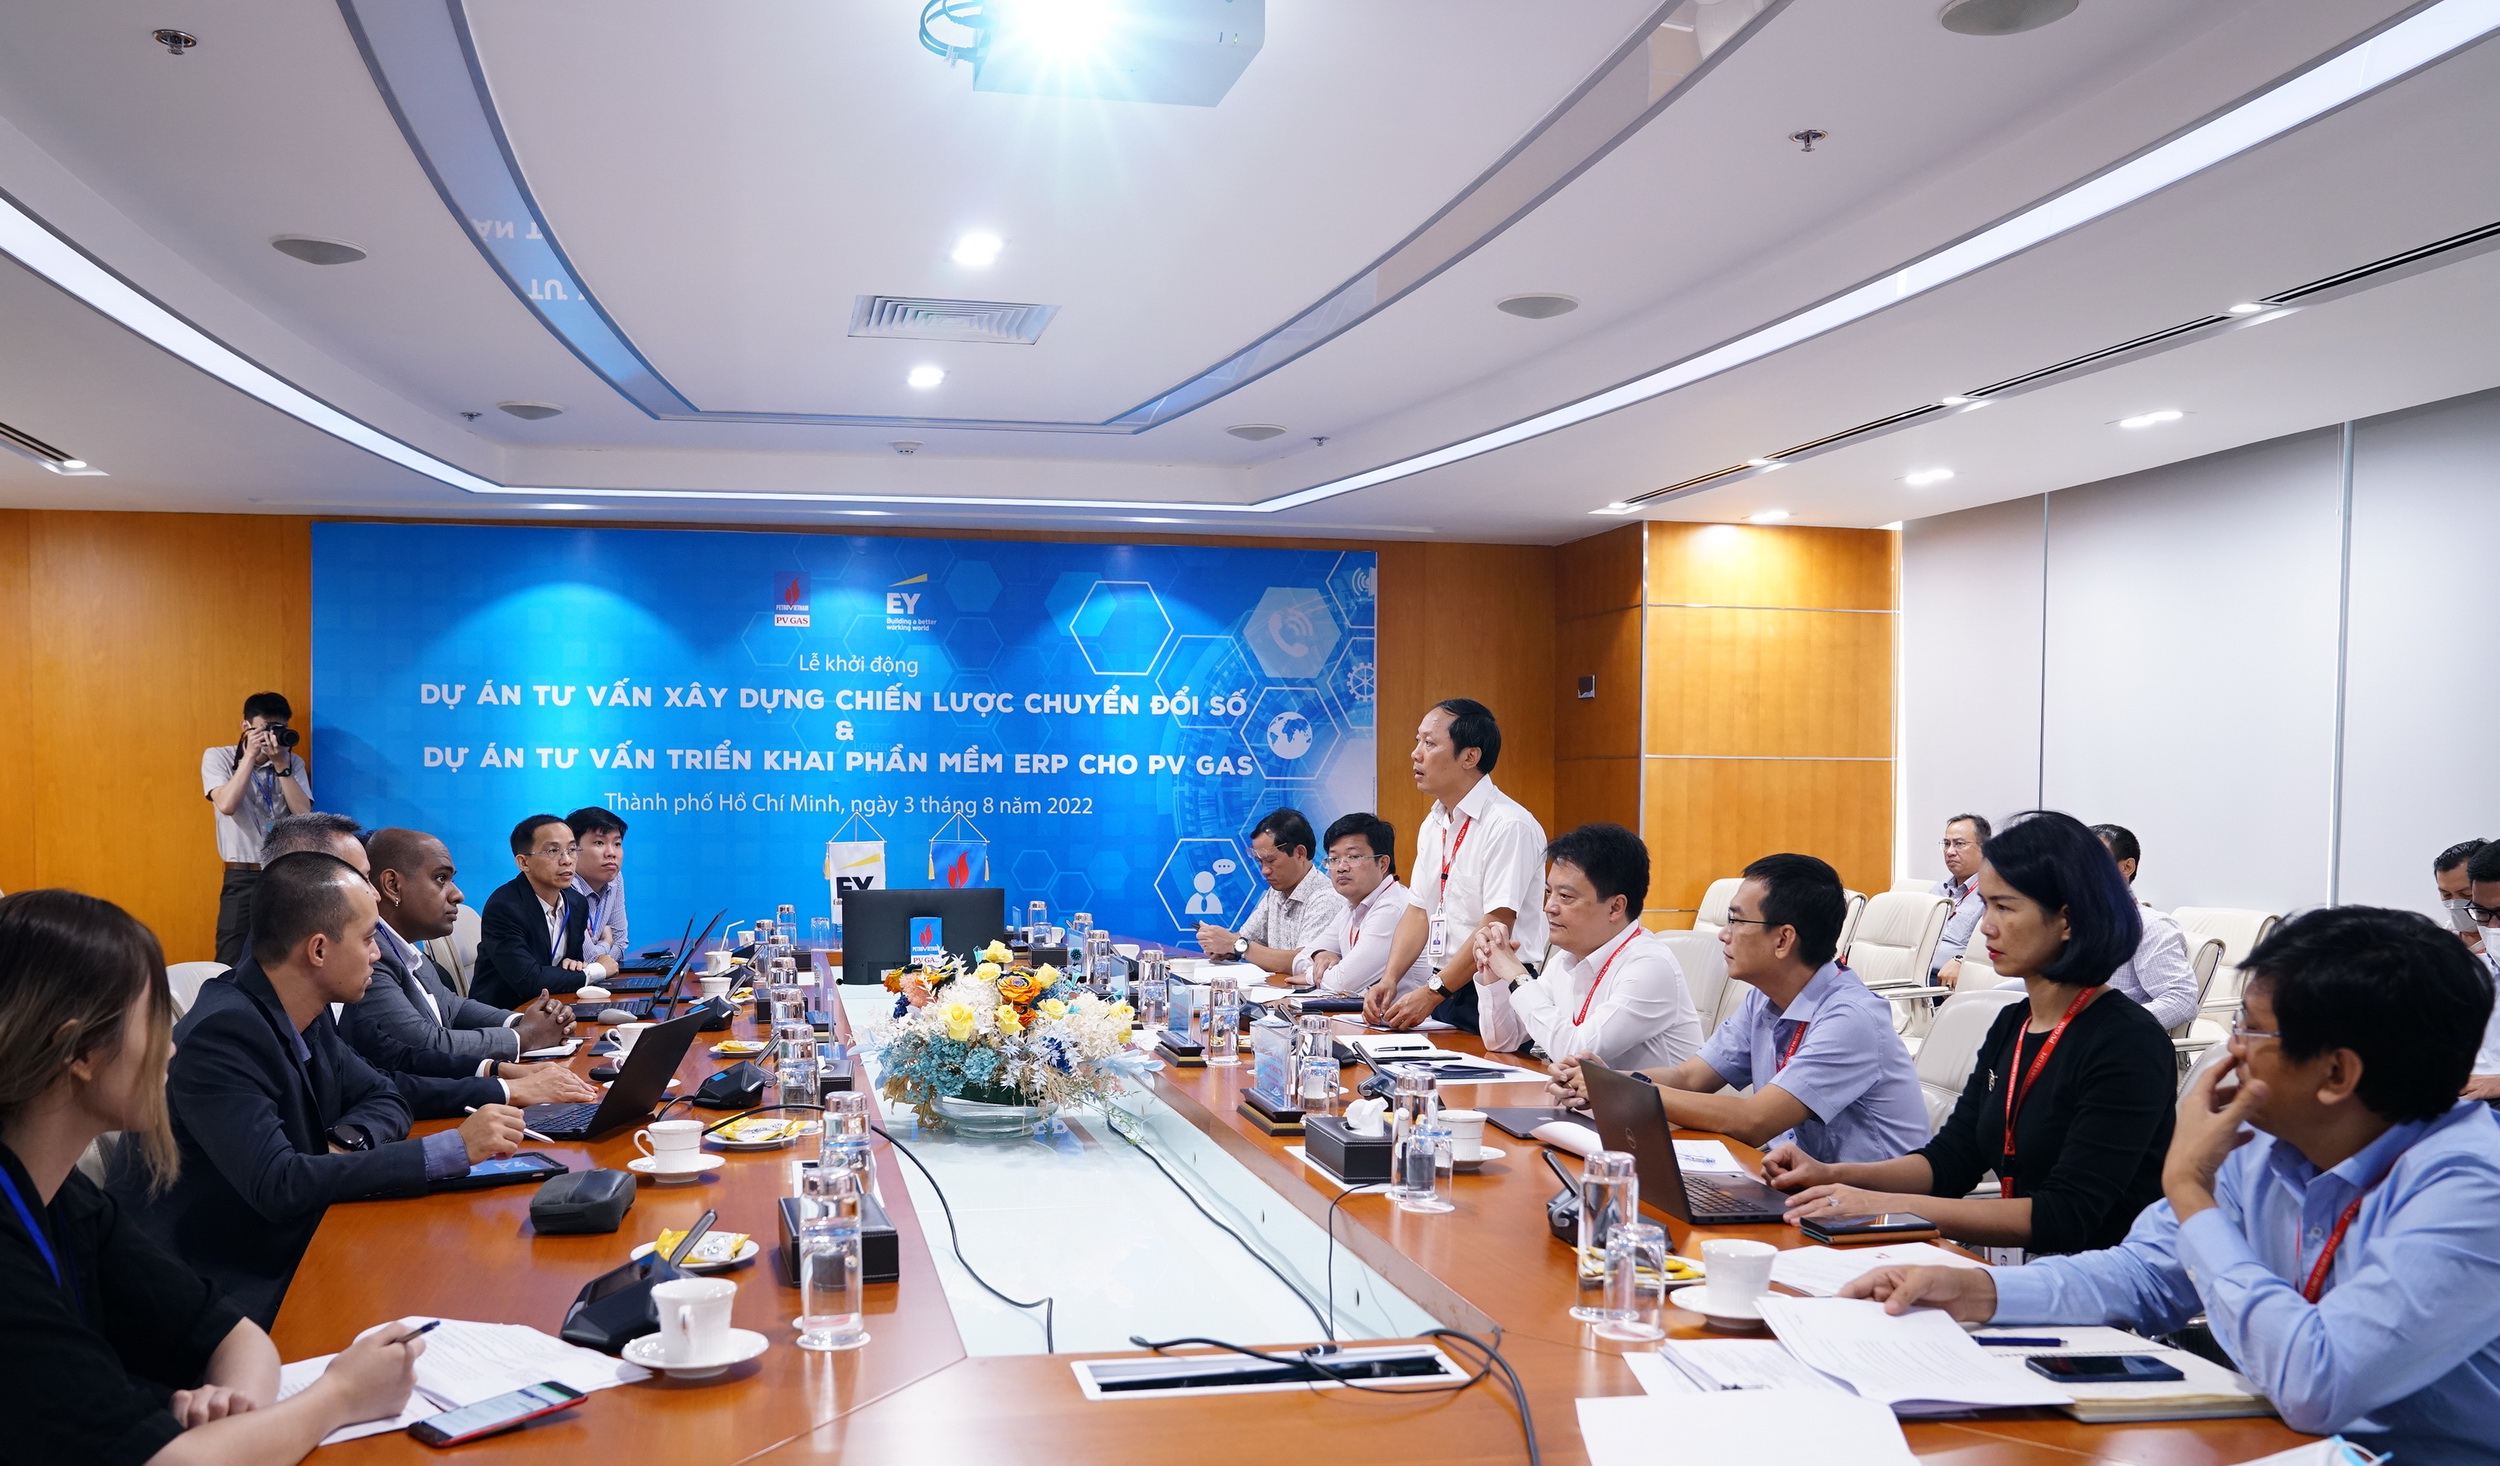 Tổng công ty Khí Việt Nam khởi động dự án “Tư vấn chiến lược chuyển đổi số” và “Tư vấn triển khai phần mềm ERP